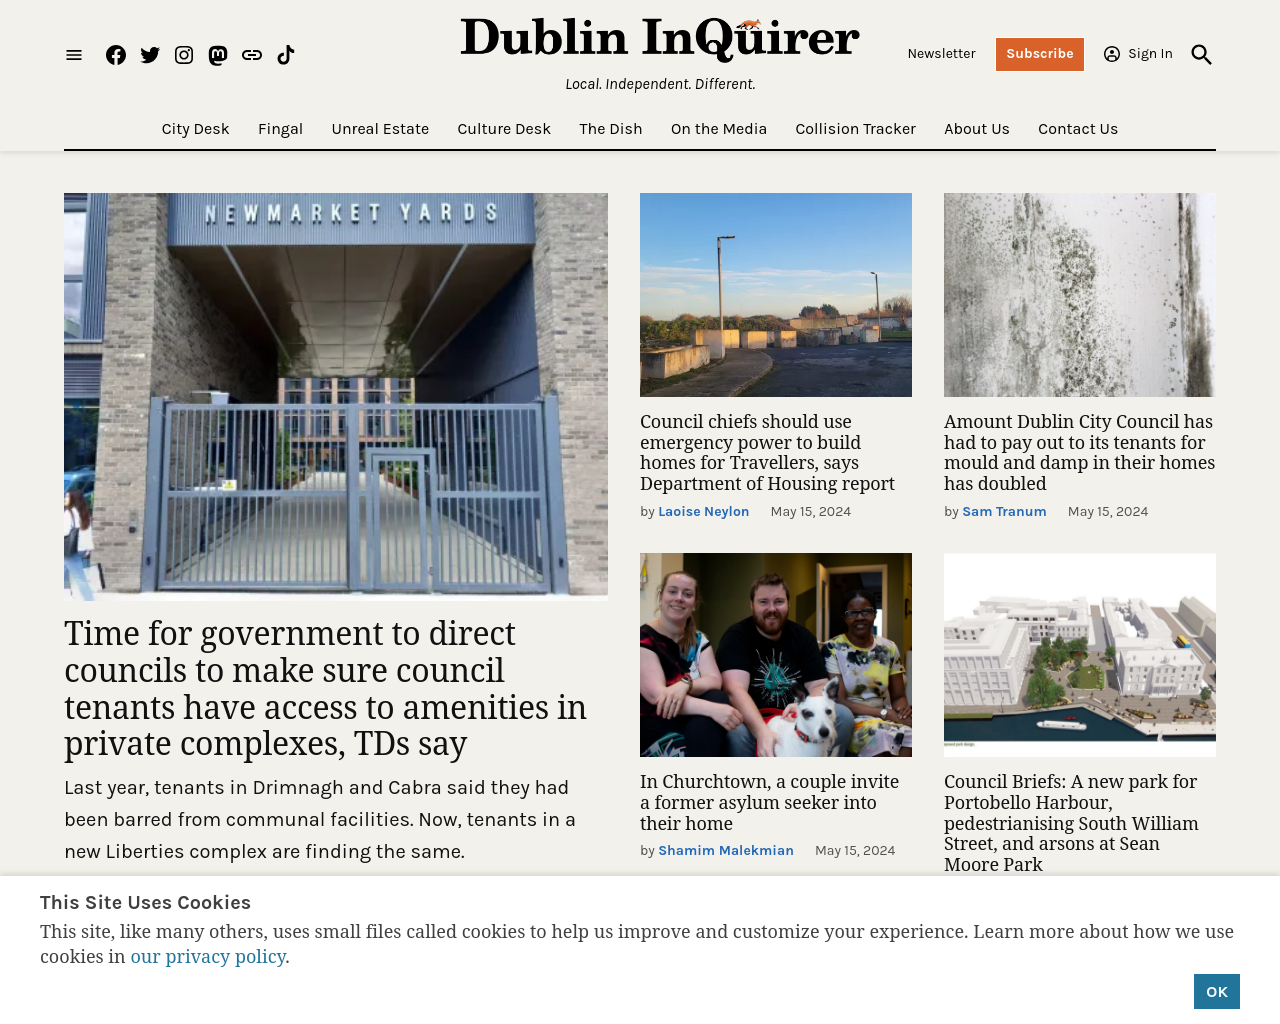 dublininquirer.com